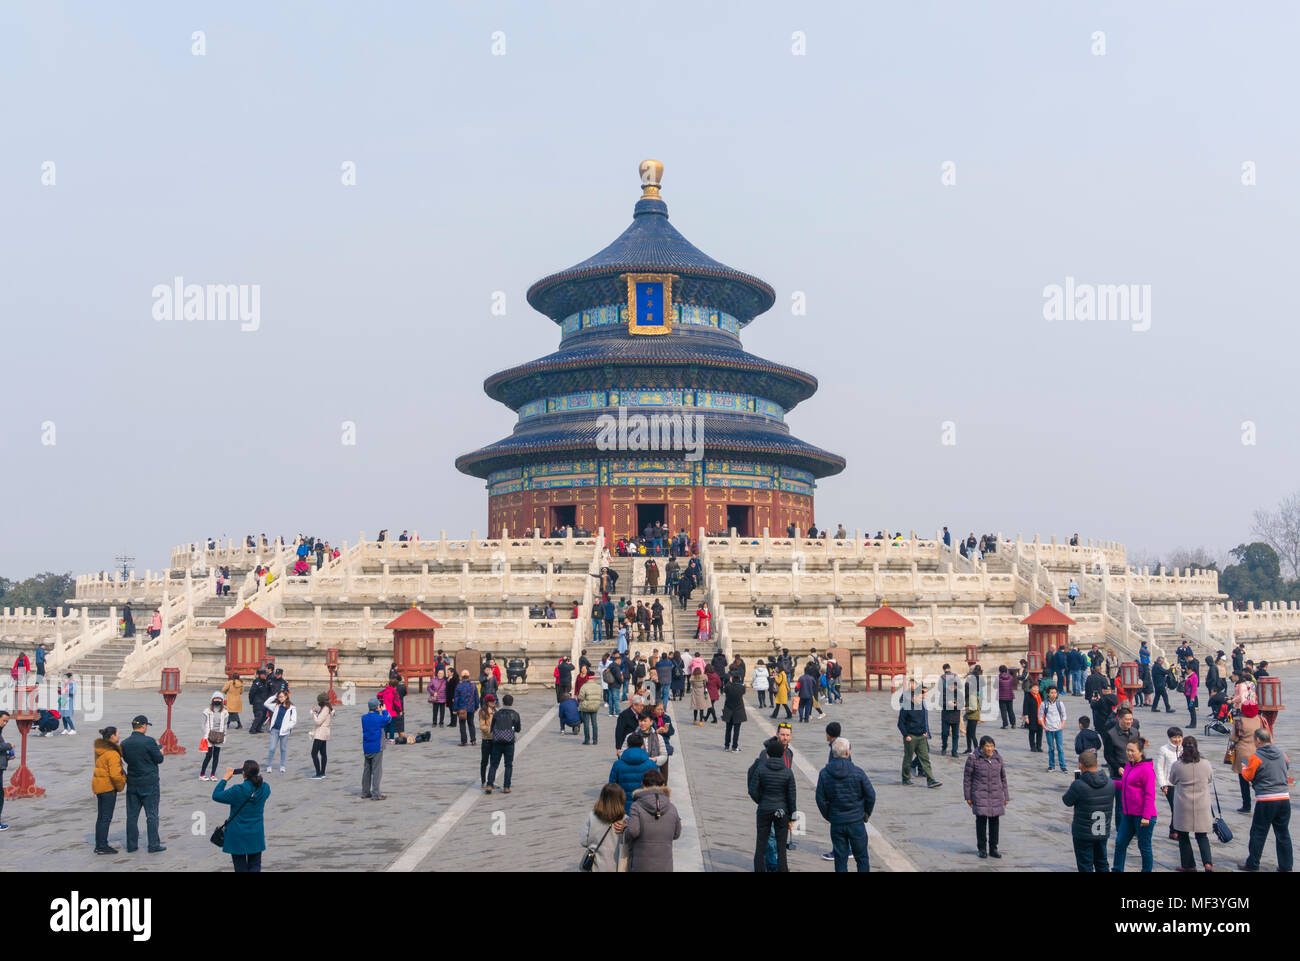 Temple of Heaven in Beijing Stock Photo